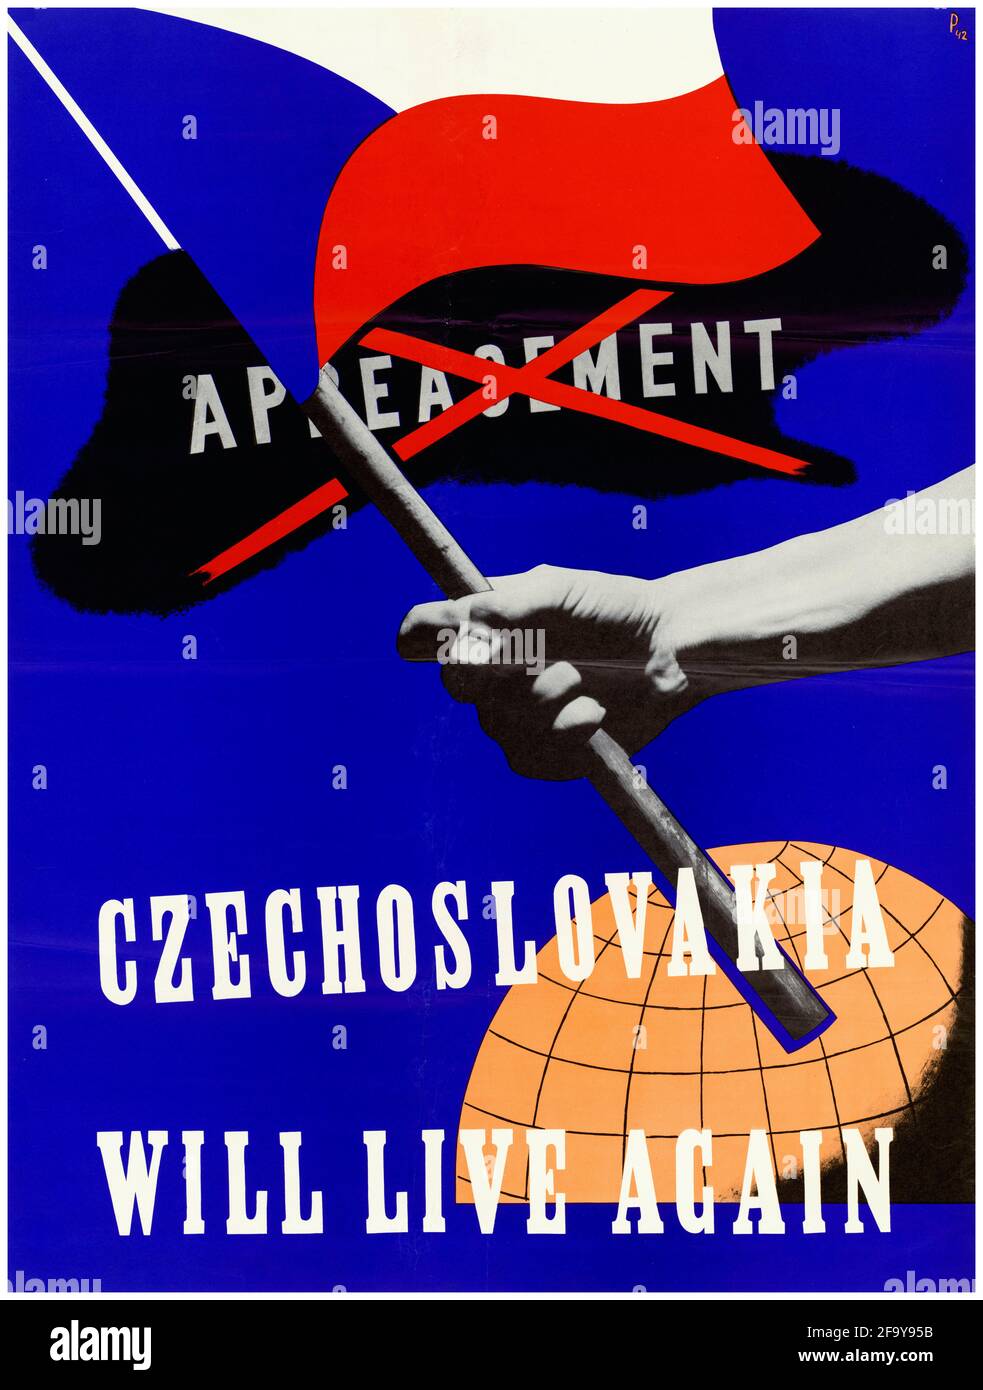 Cecoslovacchia, poster motivazionale della seconda guerra mondiale: Cecoslovacchia vivrà di nuovo (No appeasement, bandiera ceca), 1942-1945 Foto Stock